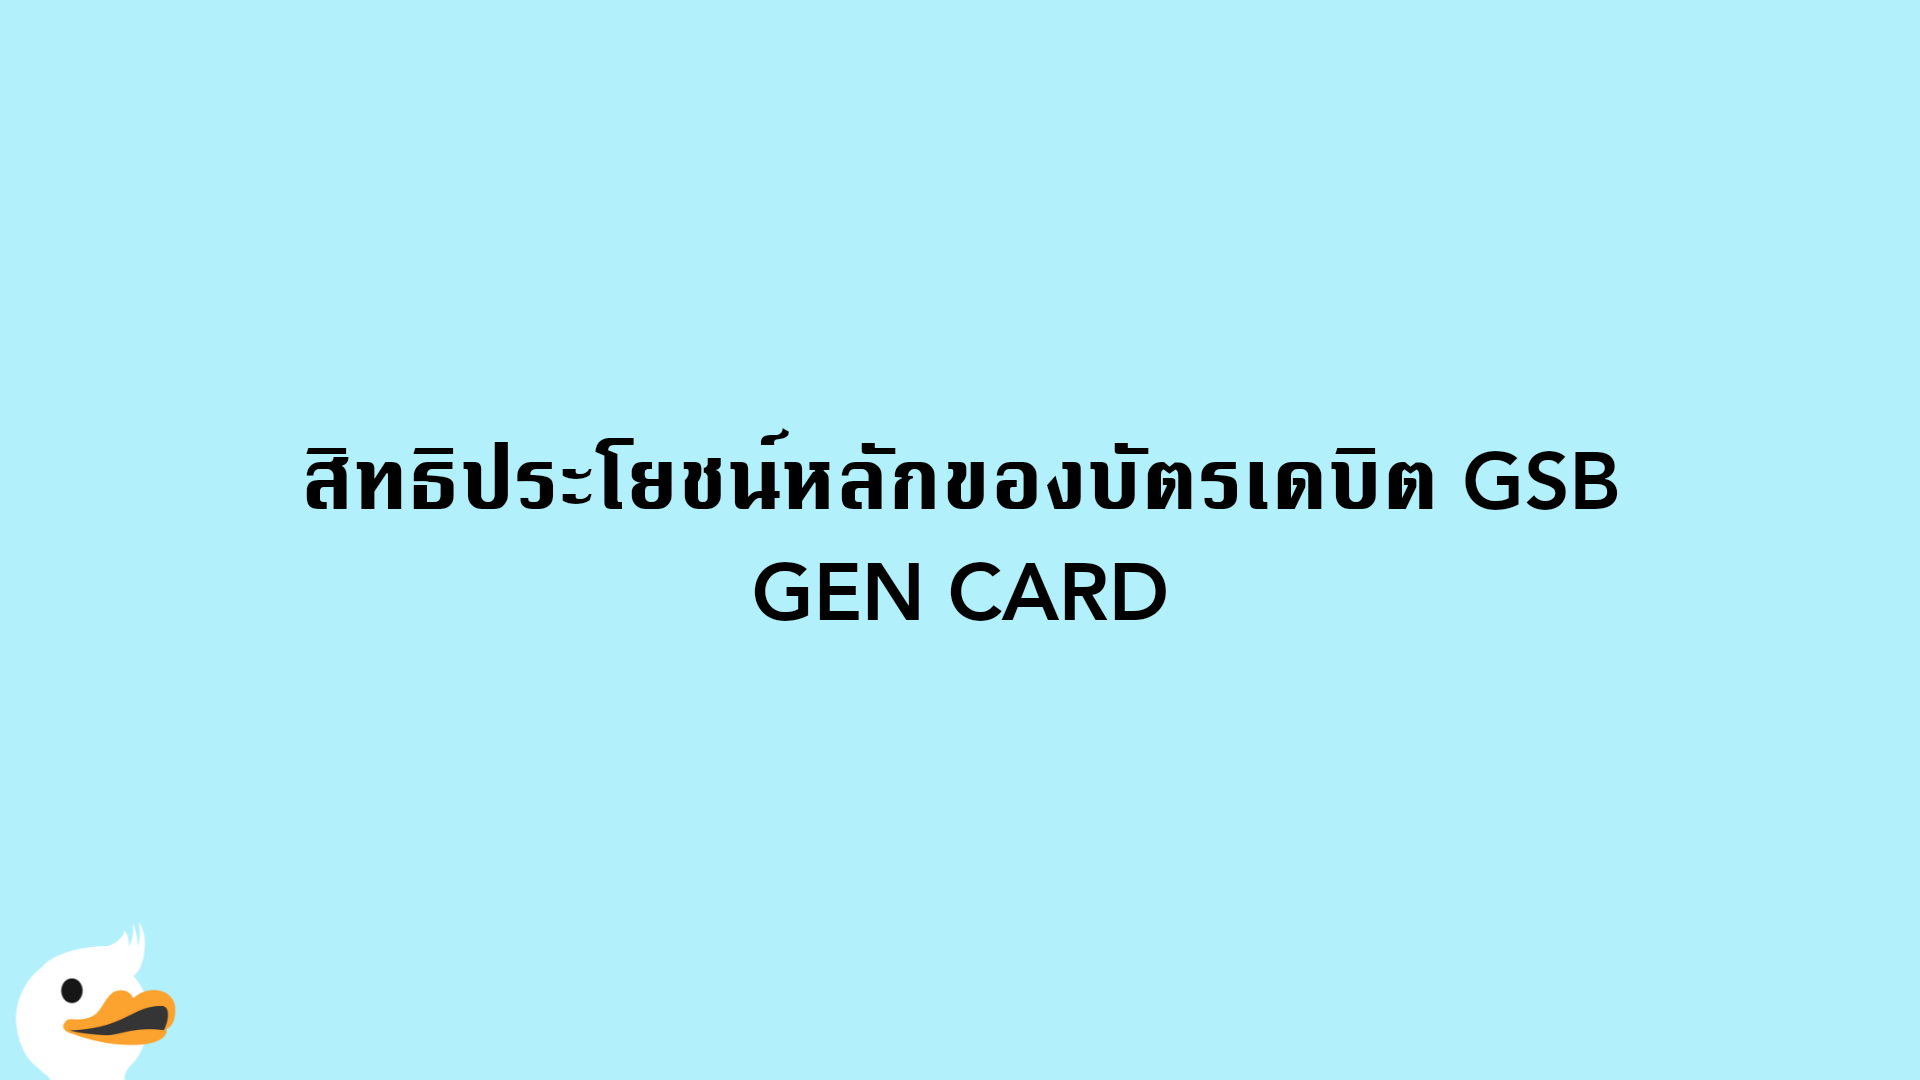 สิทธิประโยชน์หลักของบัตรเดบิต GSB GEN CARD